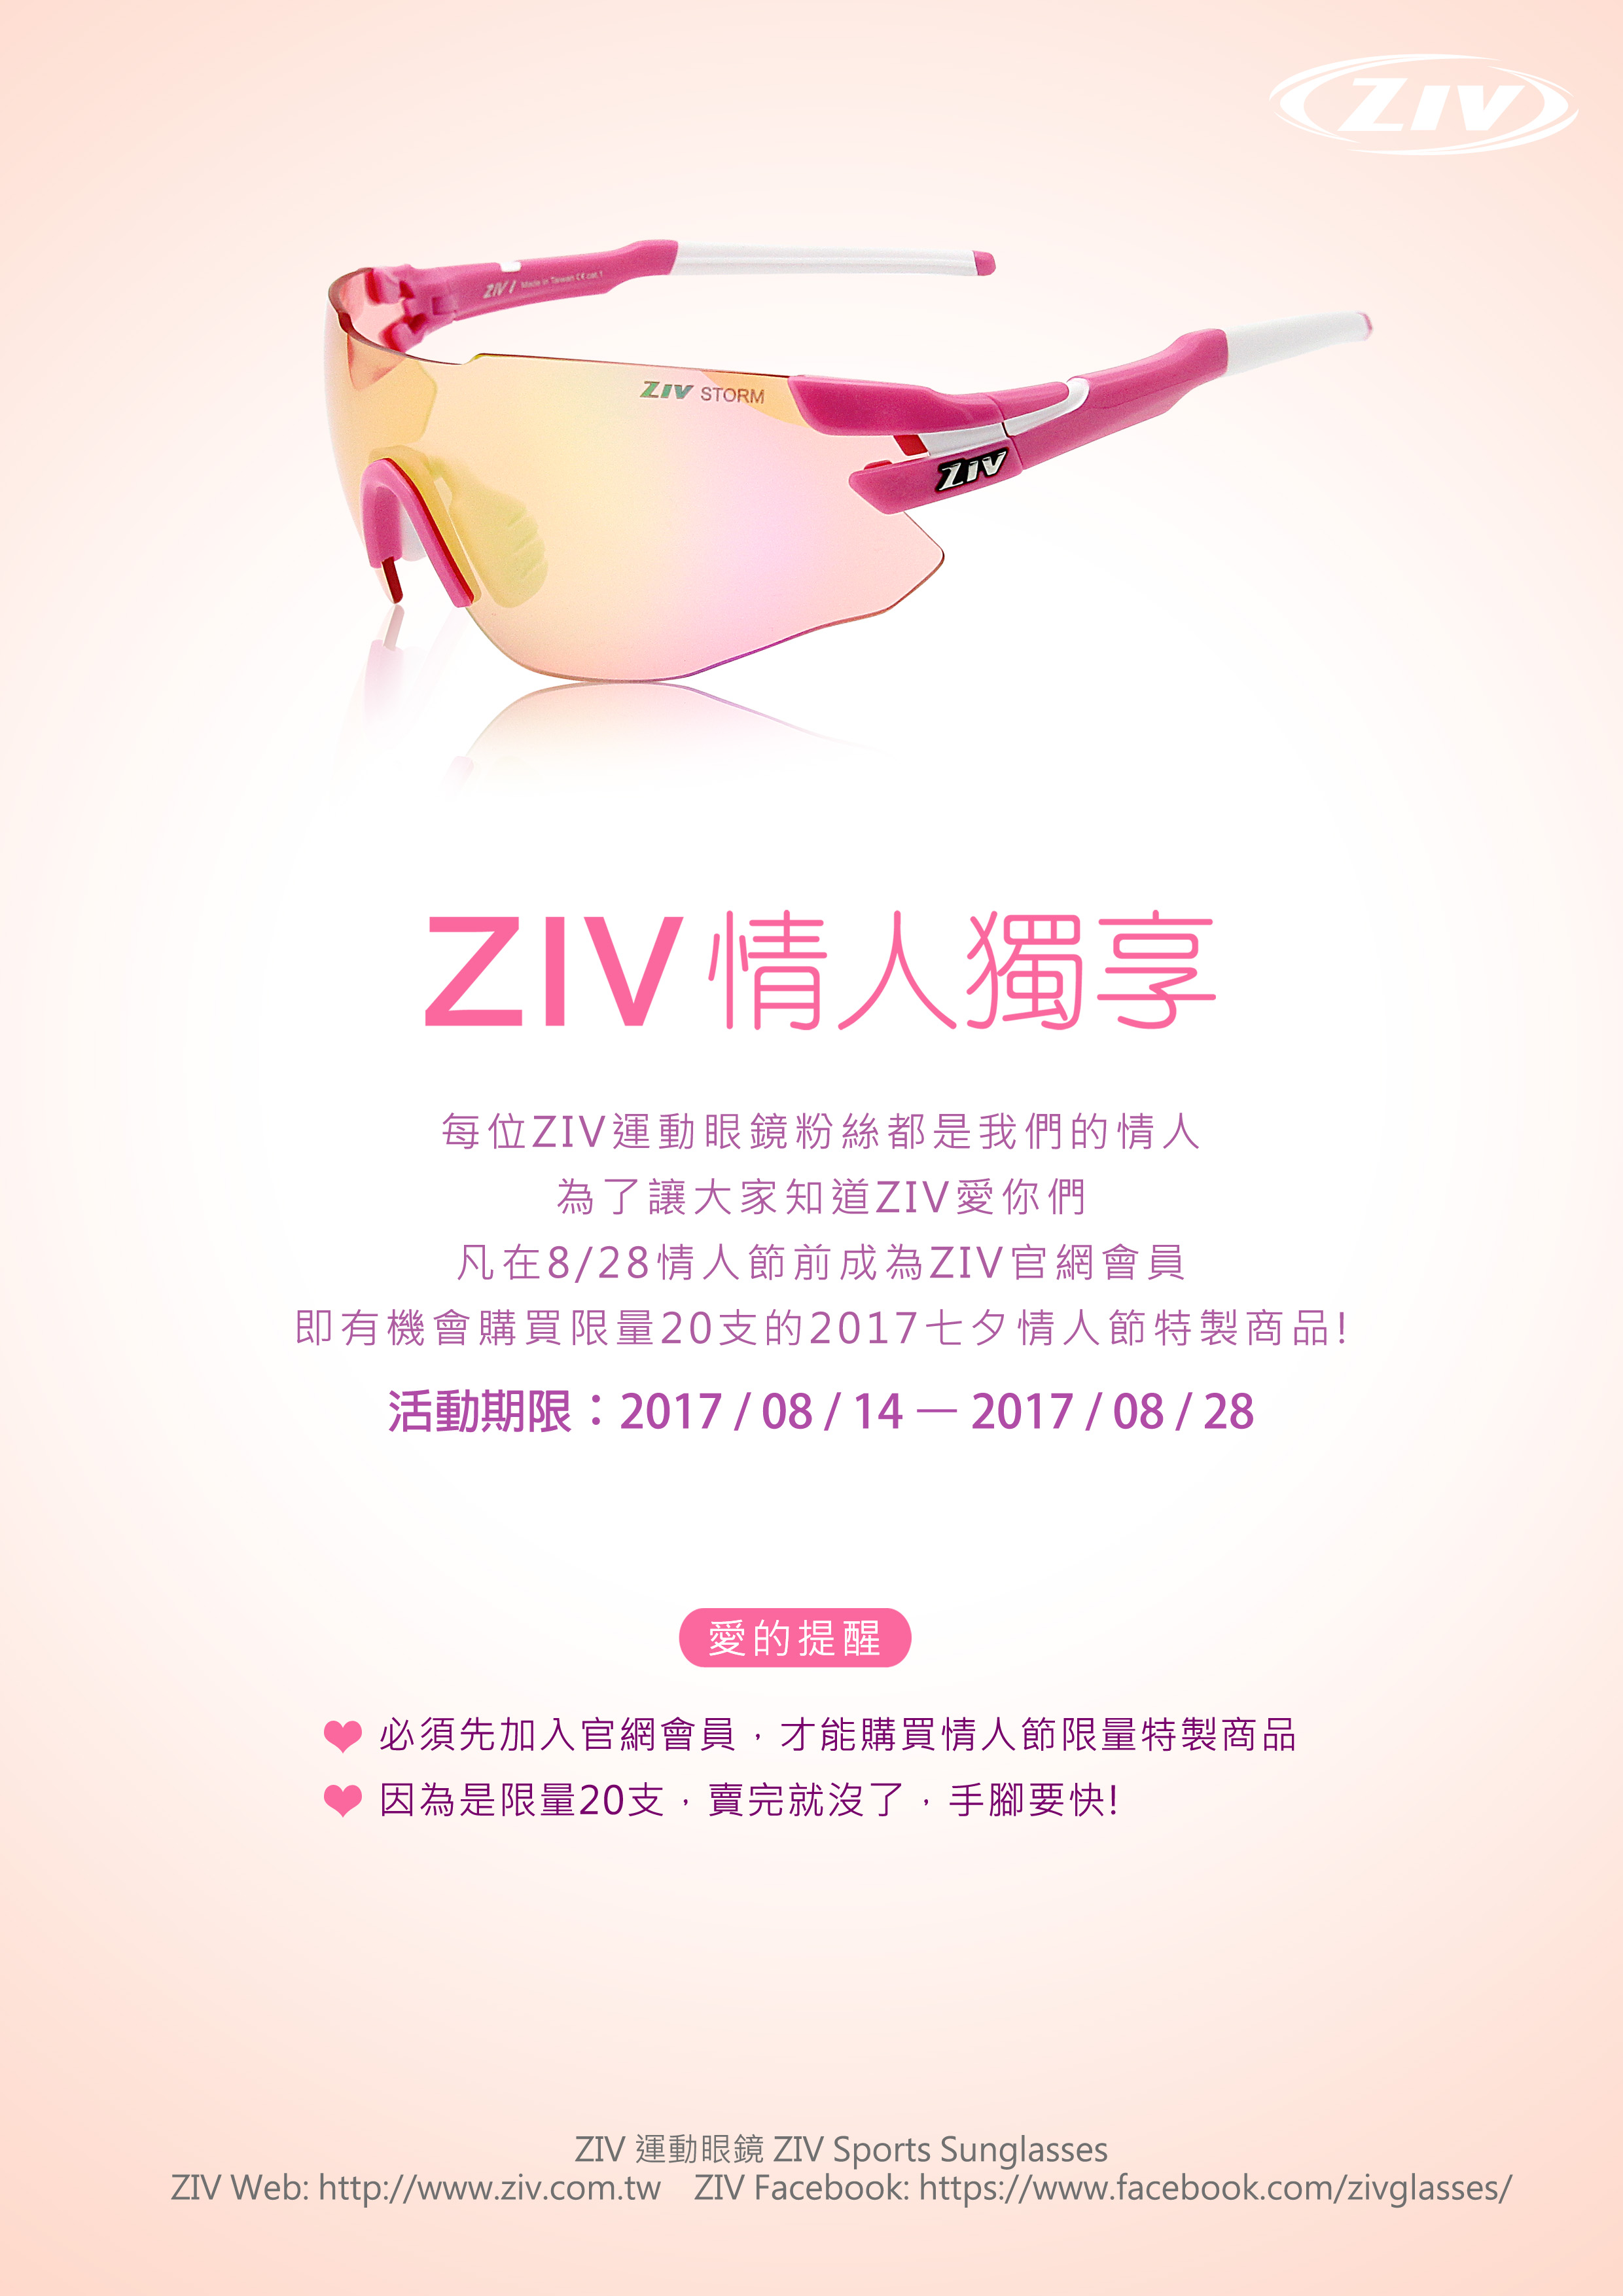 ziv太陽眼鏡,情人節太陽眼鏡活動,ziv運動眼鏡